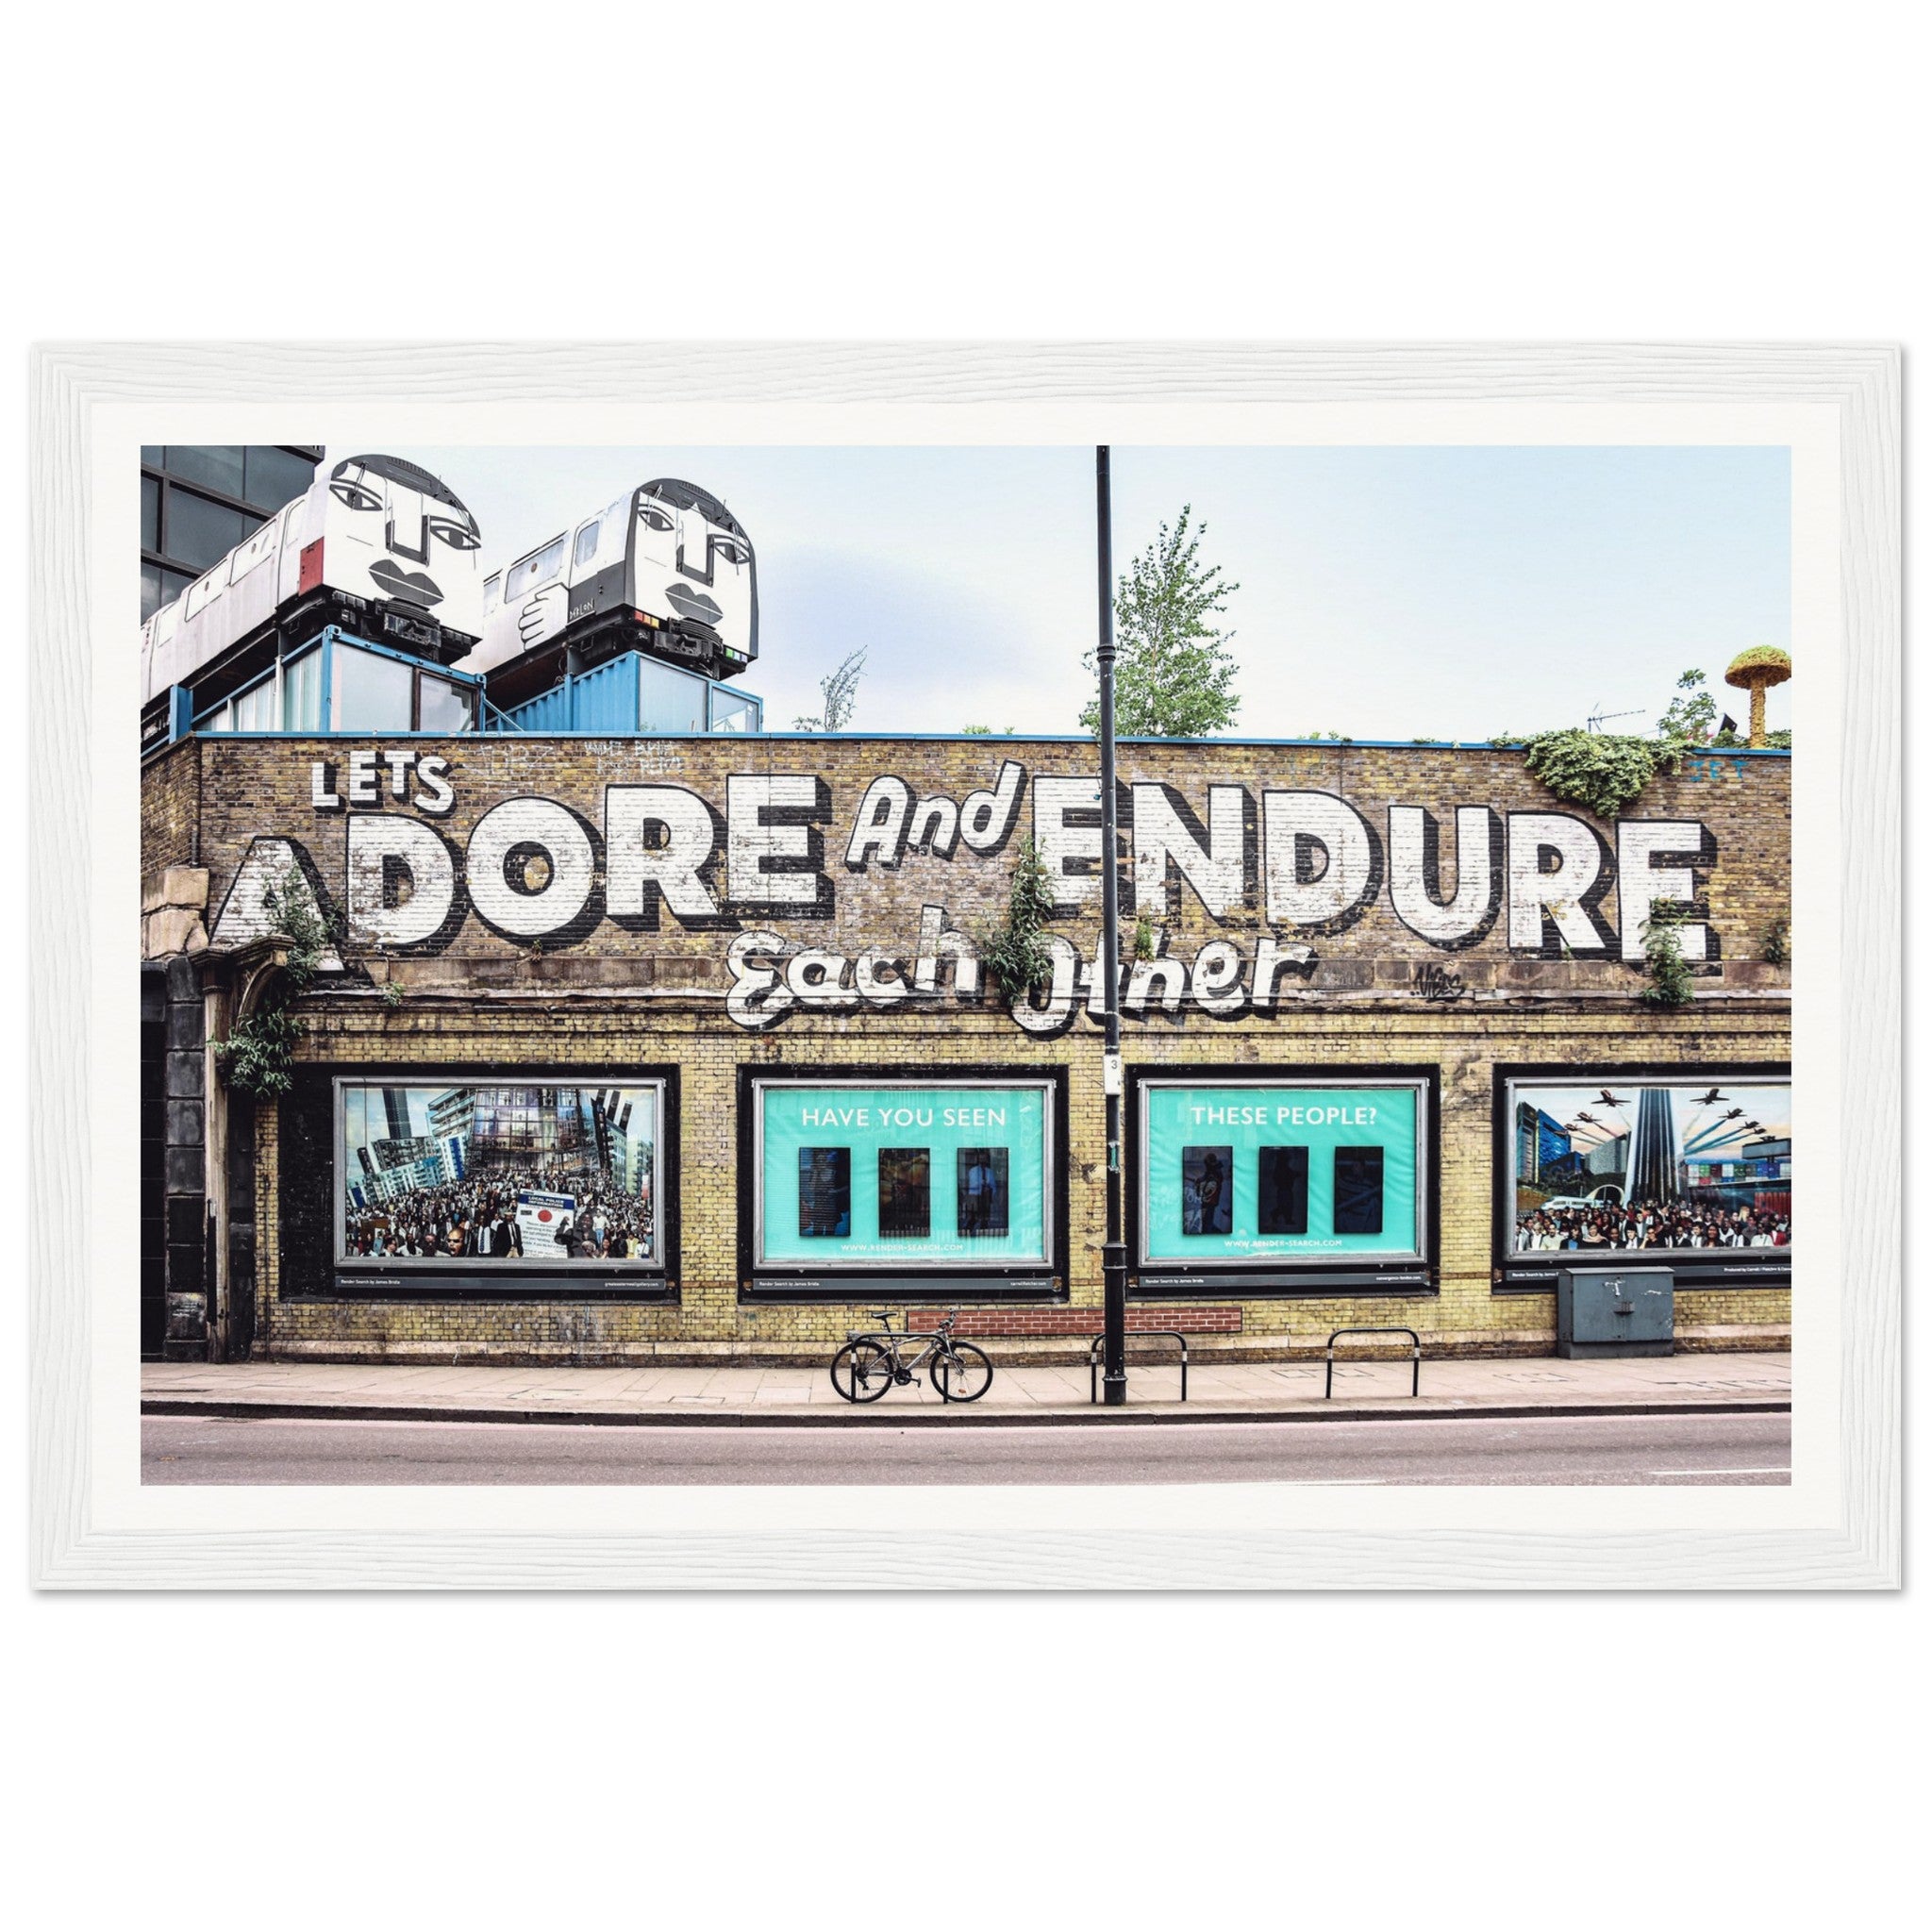 "Let's Adore & Endure" Wooden Framed Poster